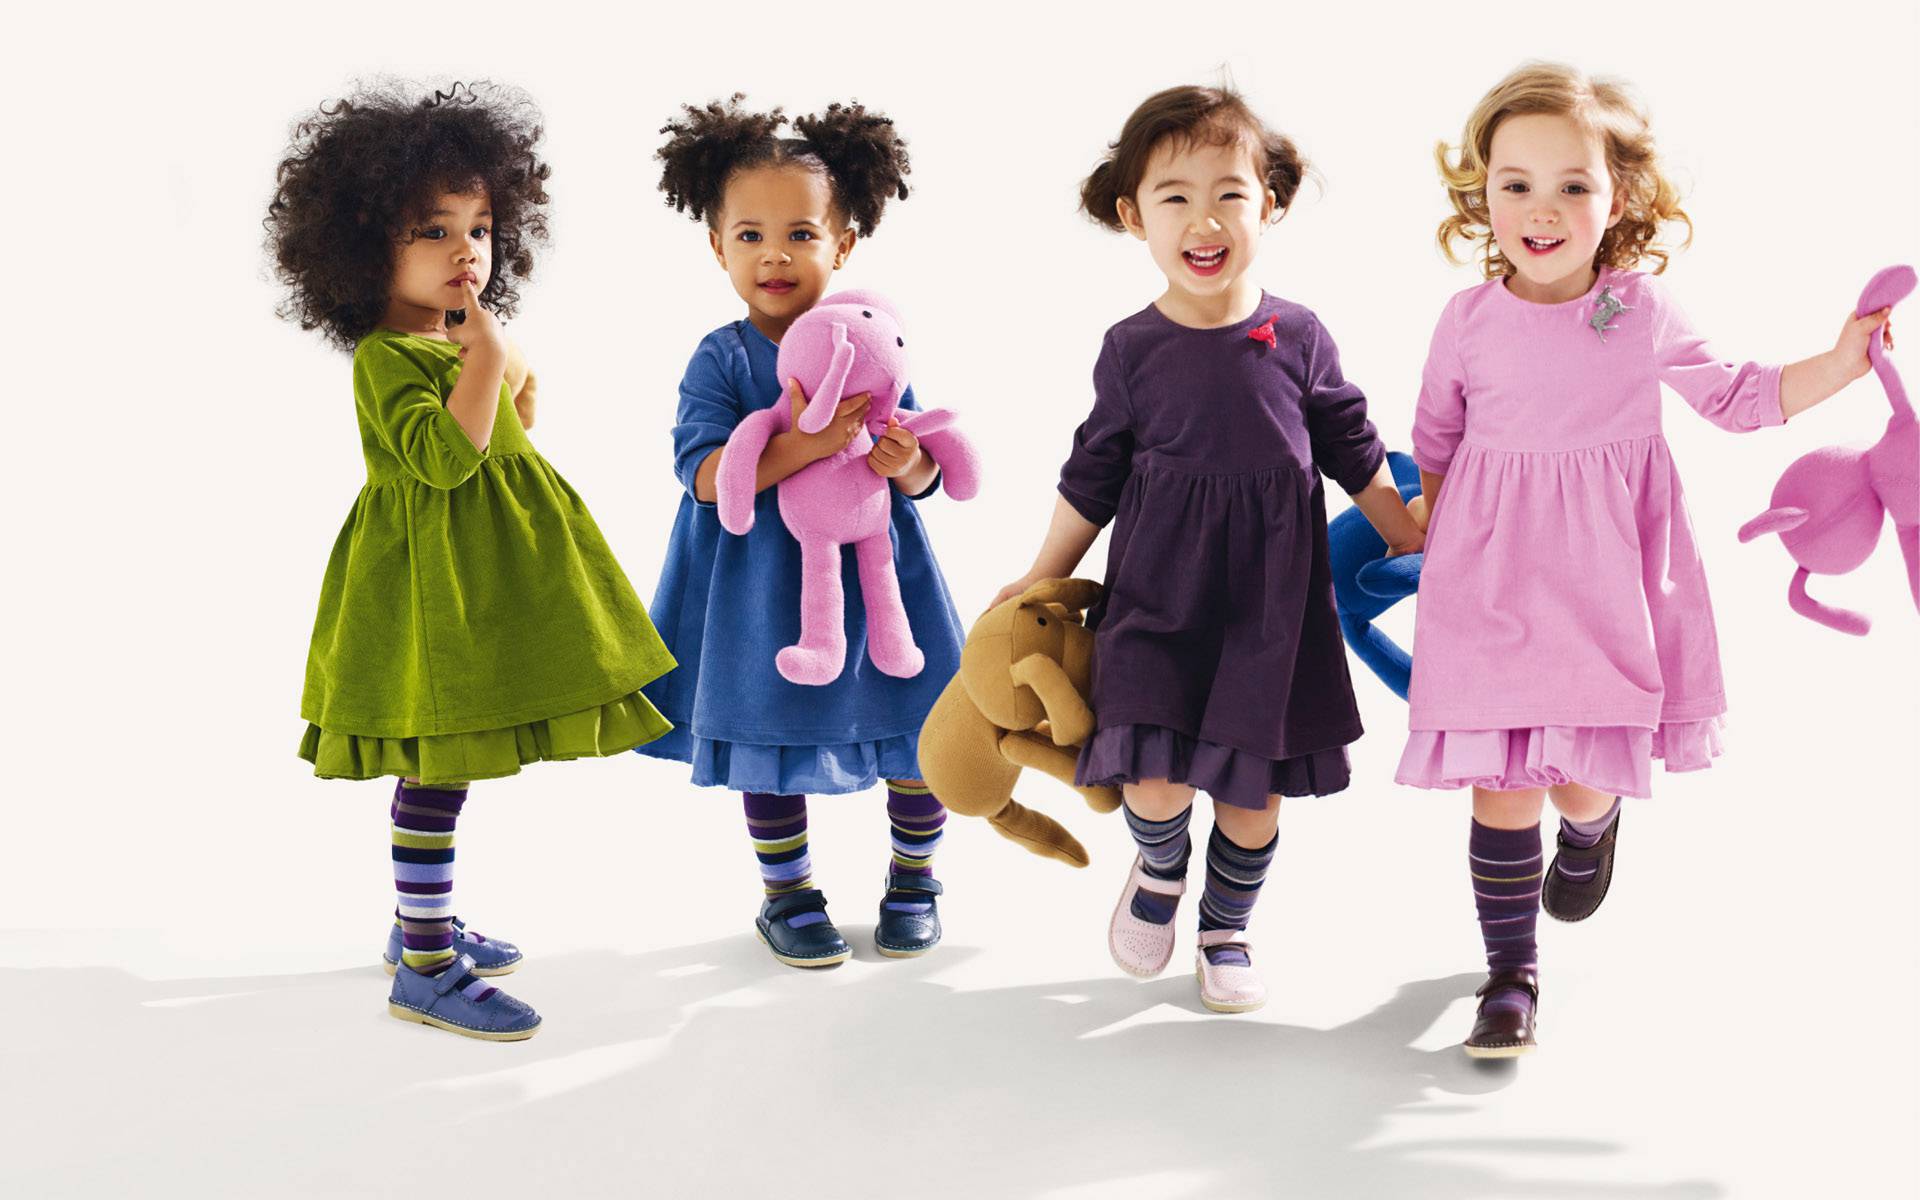 Top 8 xưởng sỉ quần áo trẻ em giá rẻ, uy tín - Tuyển Sỉ